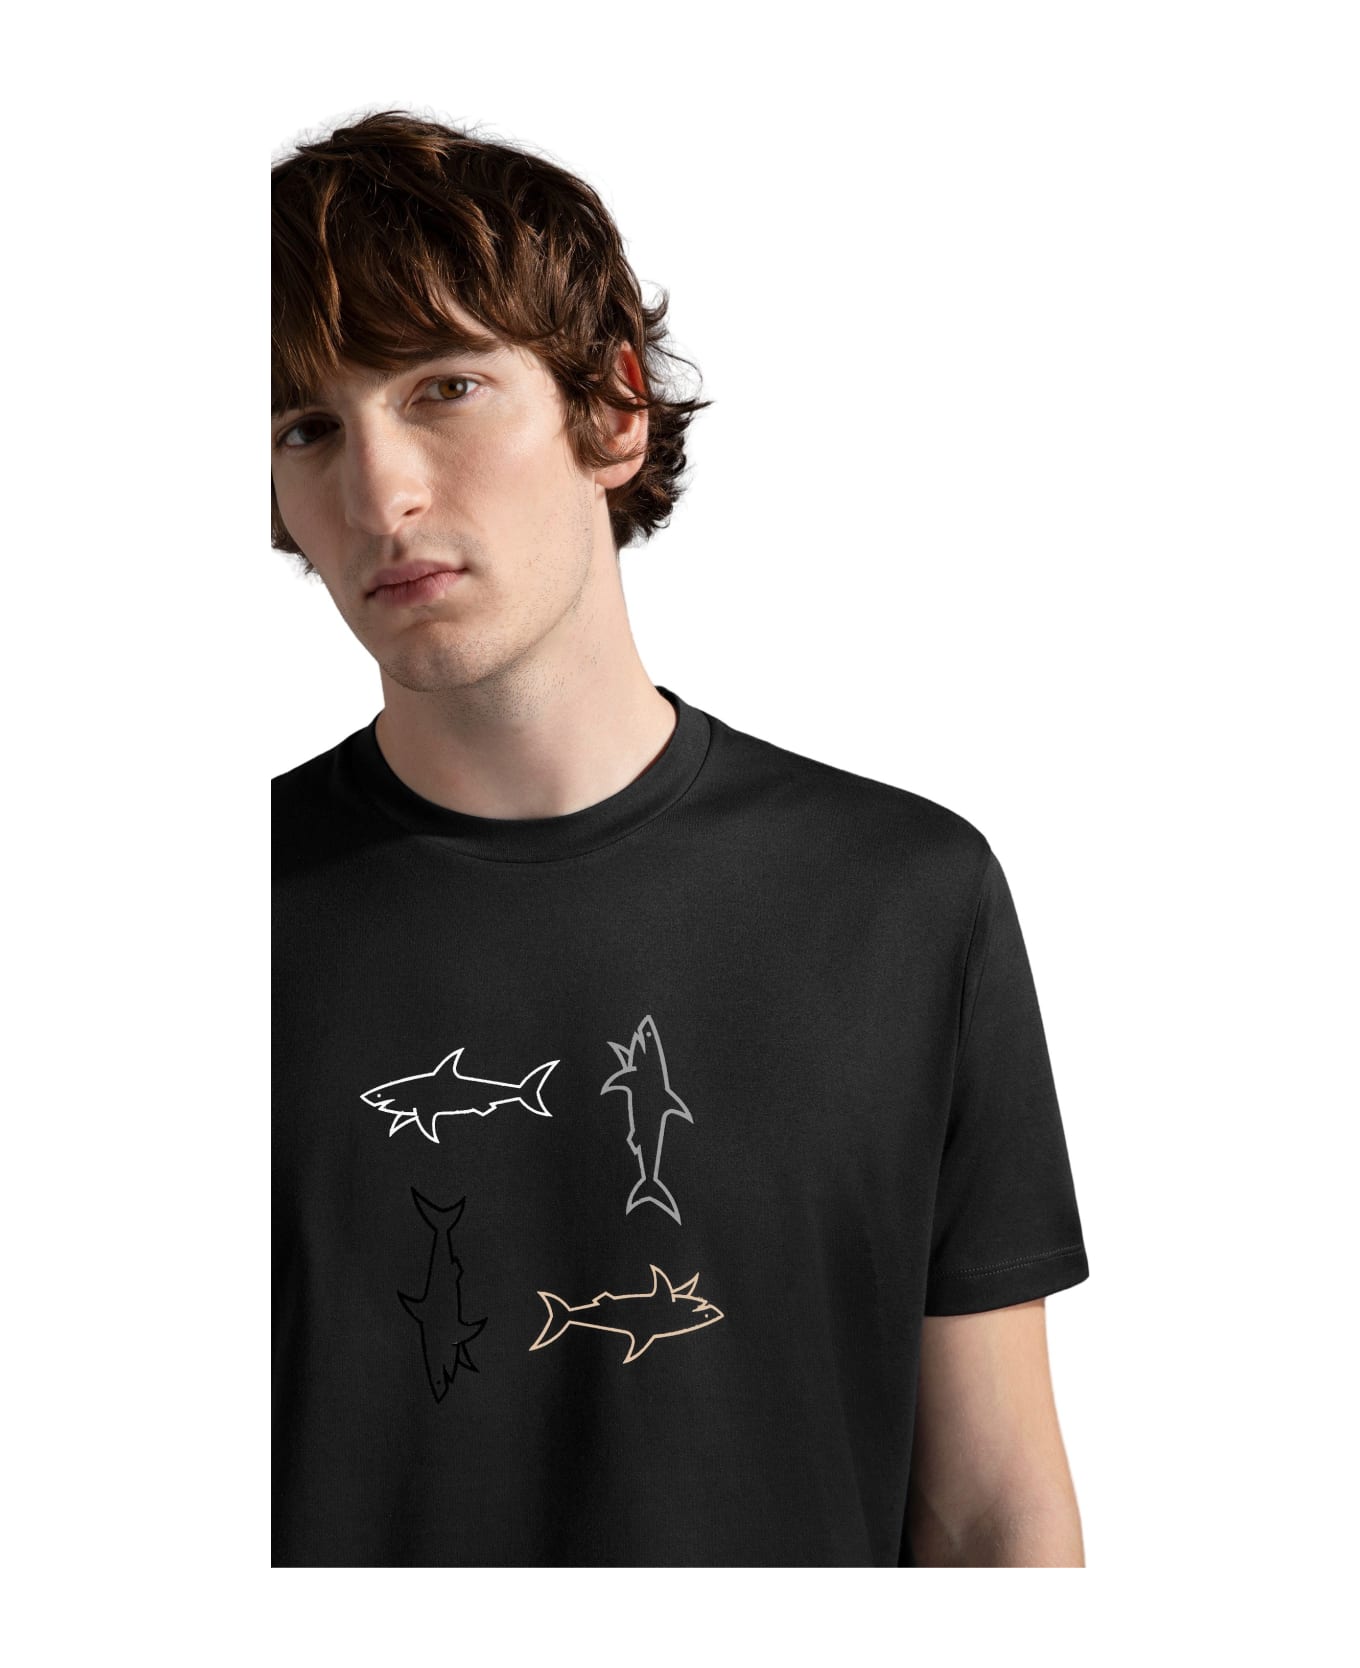 Paul&Shark Tshirt - Black シャツ